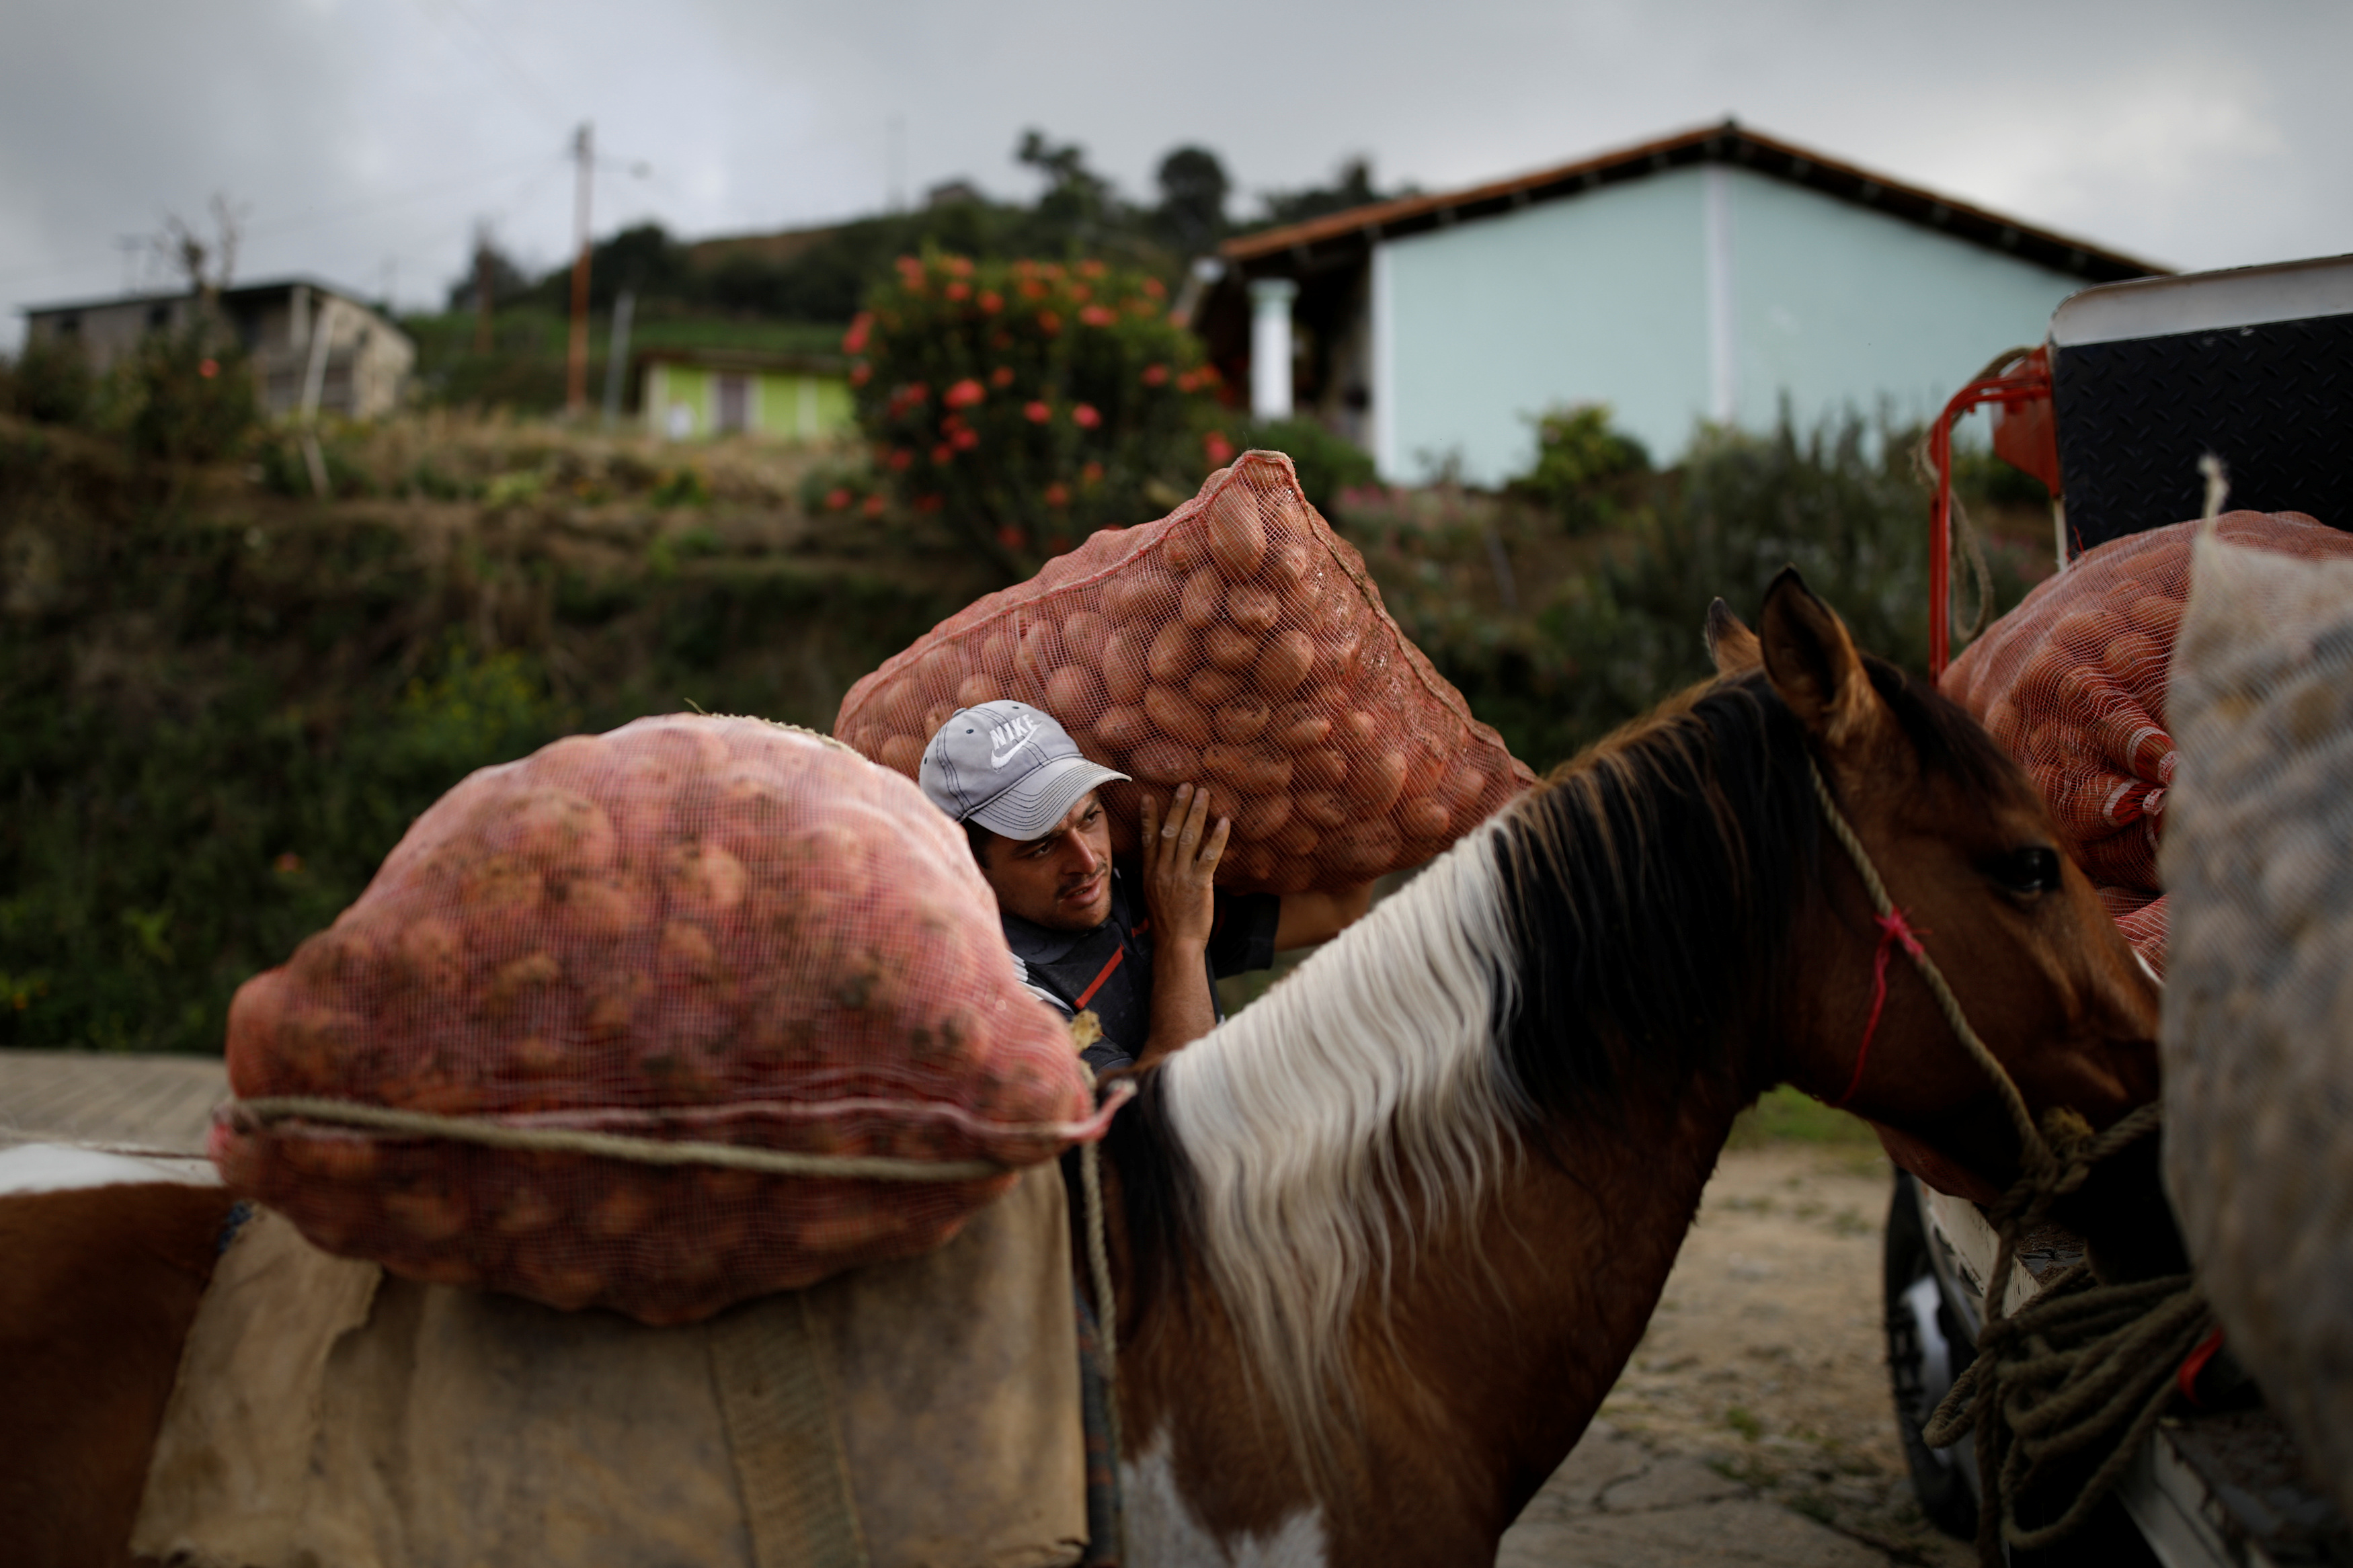 Enfermedades en cultivos agravan crisis alimentaria en Venezuela (Fotos)